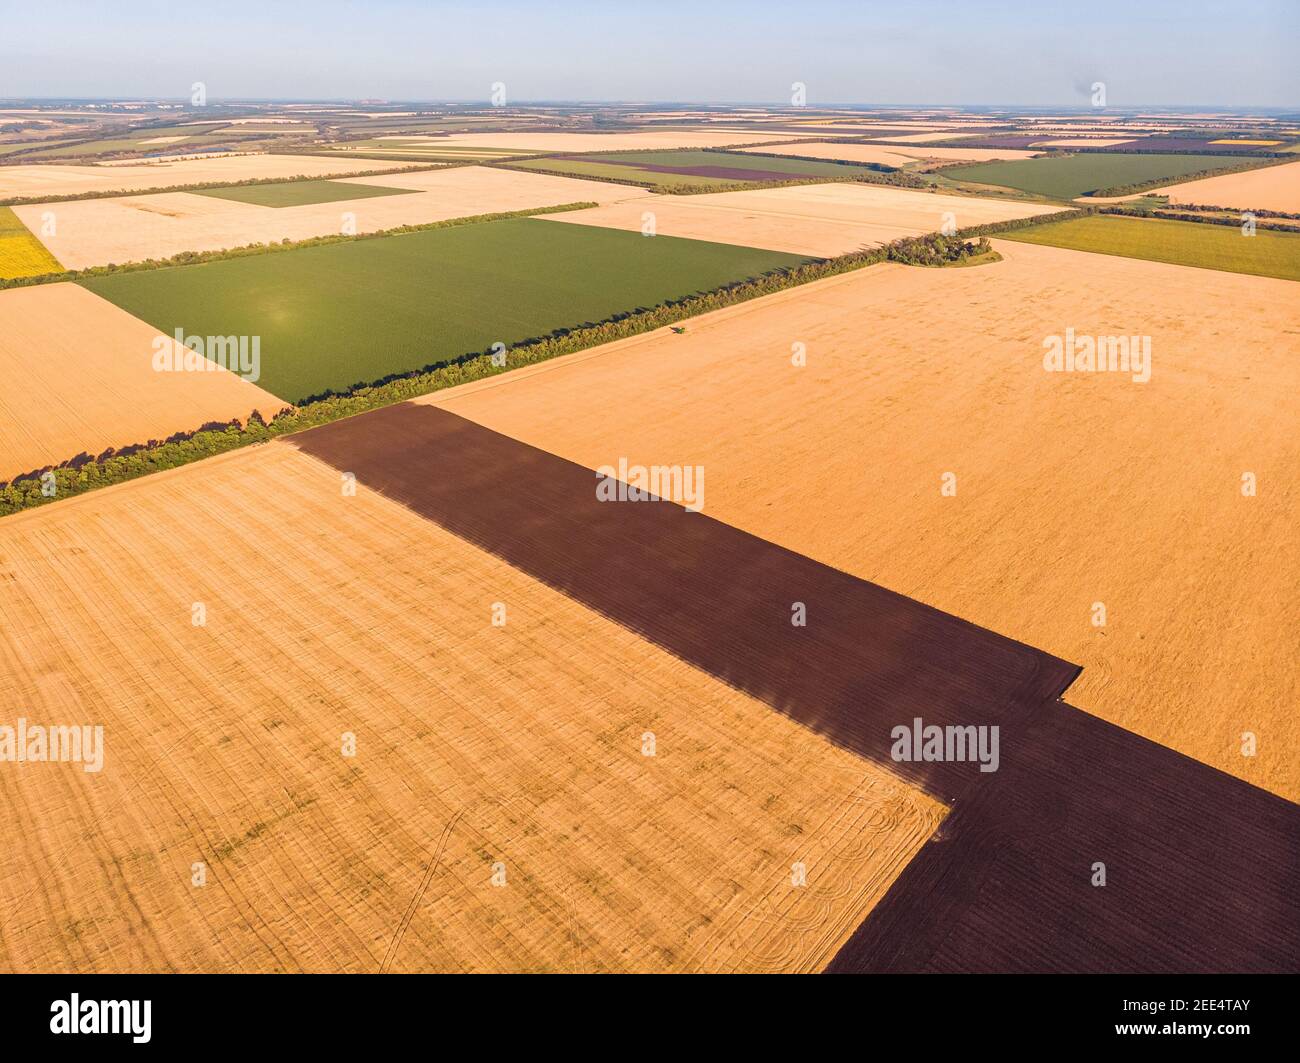 Hermosa campiña patchwork patrones de paisaje cultivado de drone pov, campos de maíz, soya y trigo de alto ángulo de visión Foto de stock